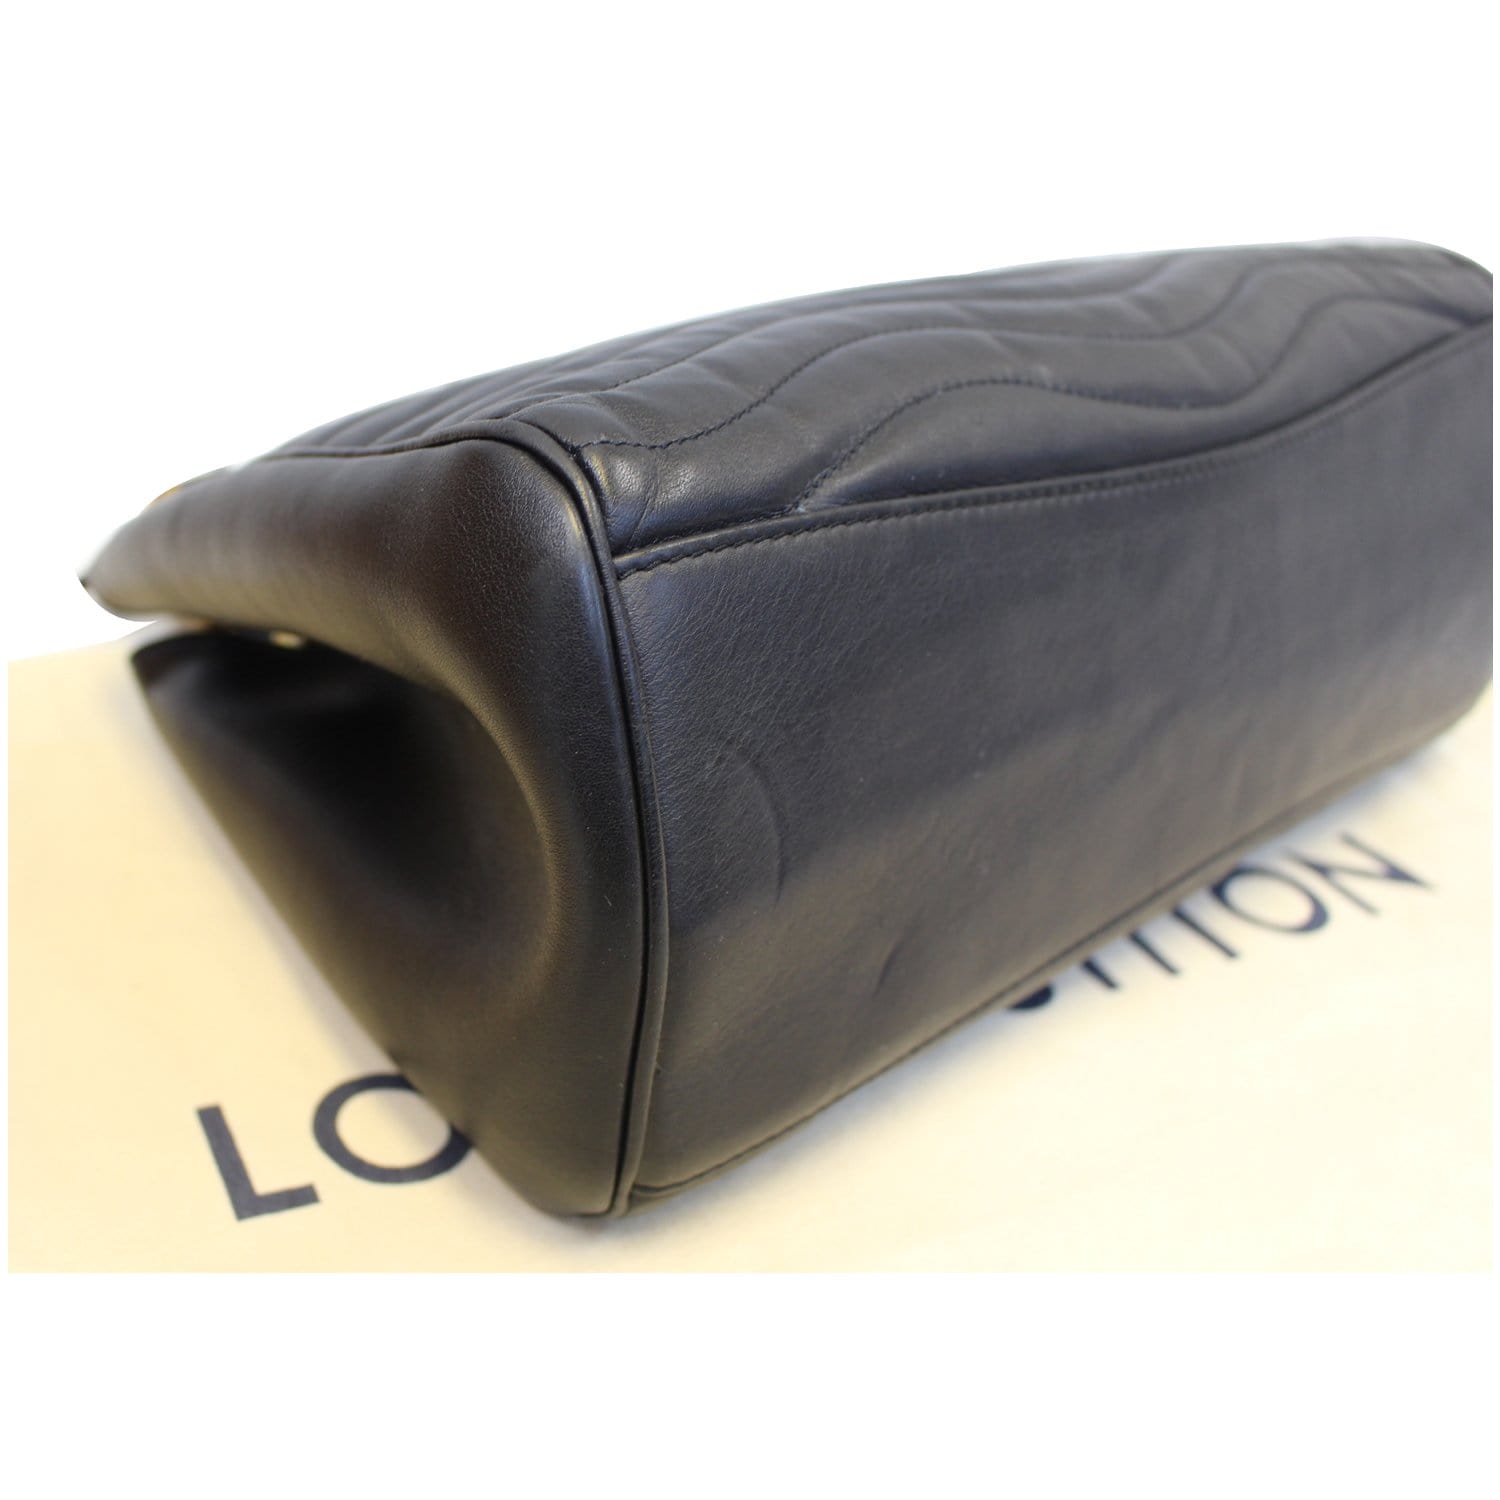 LOUIS VUITTON Wave Chain Leather Tote Shoulder Bag Black-US